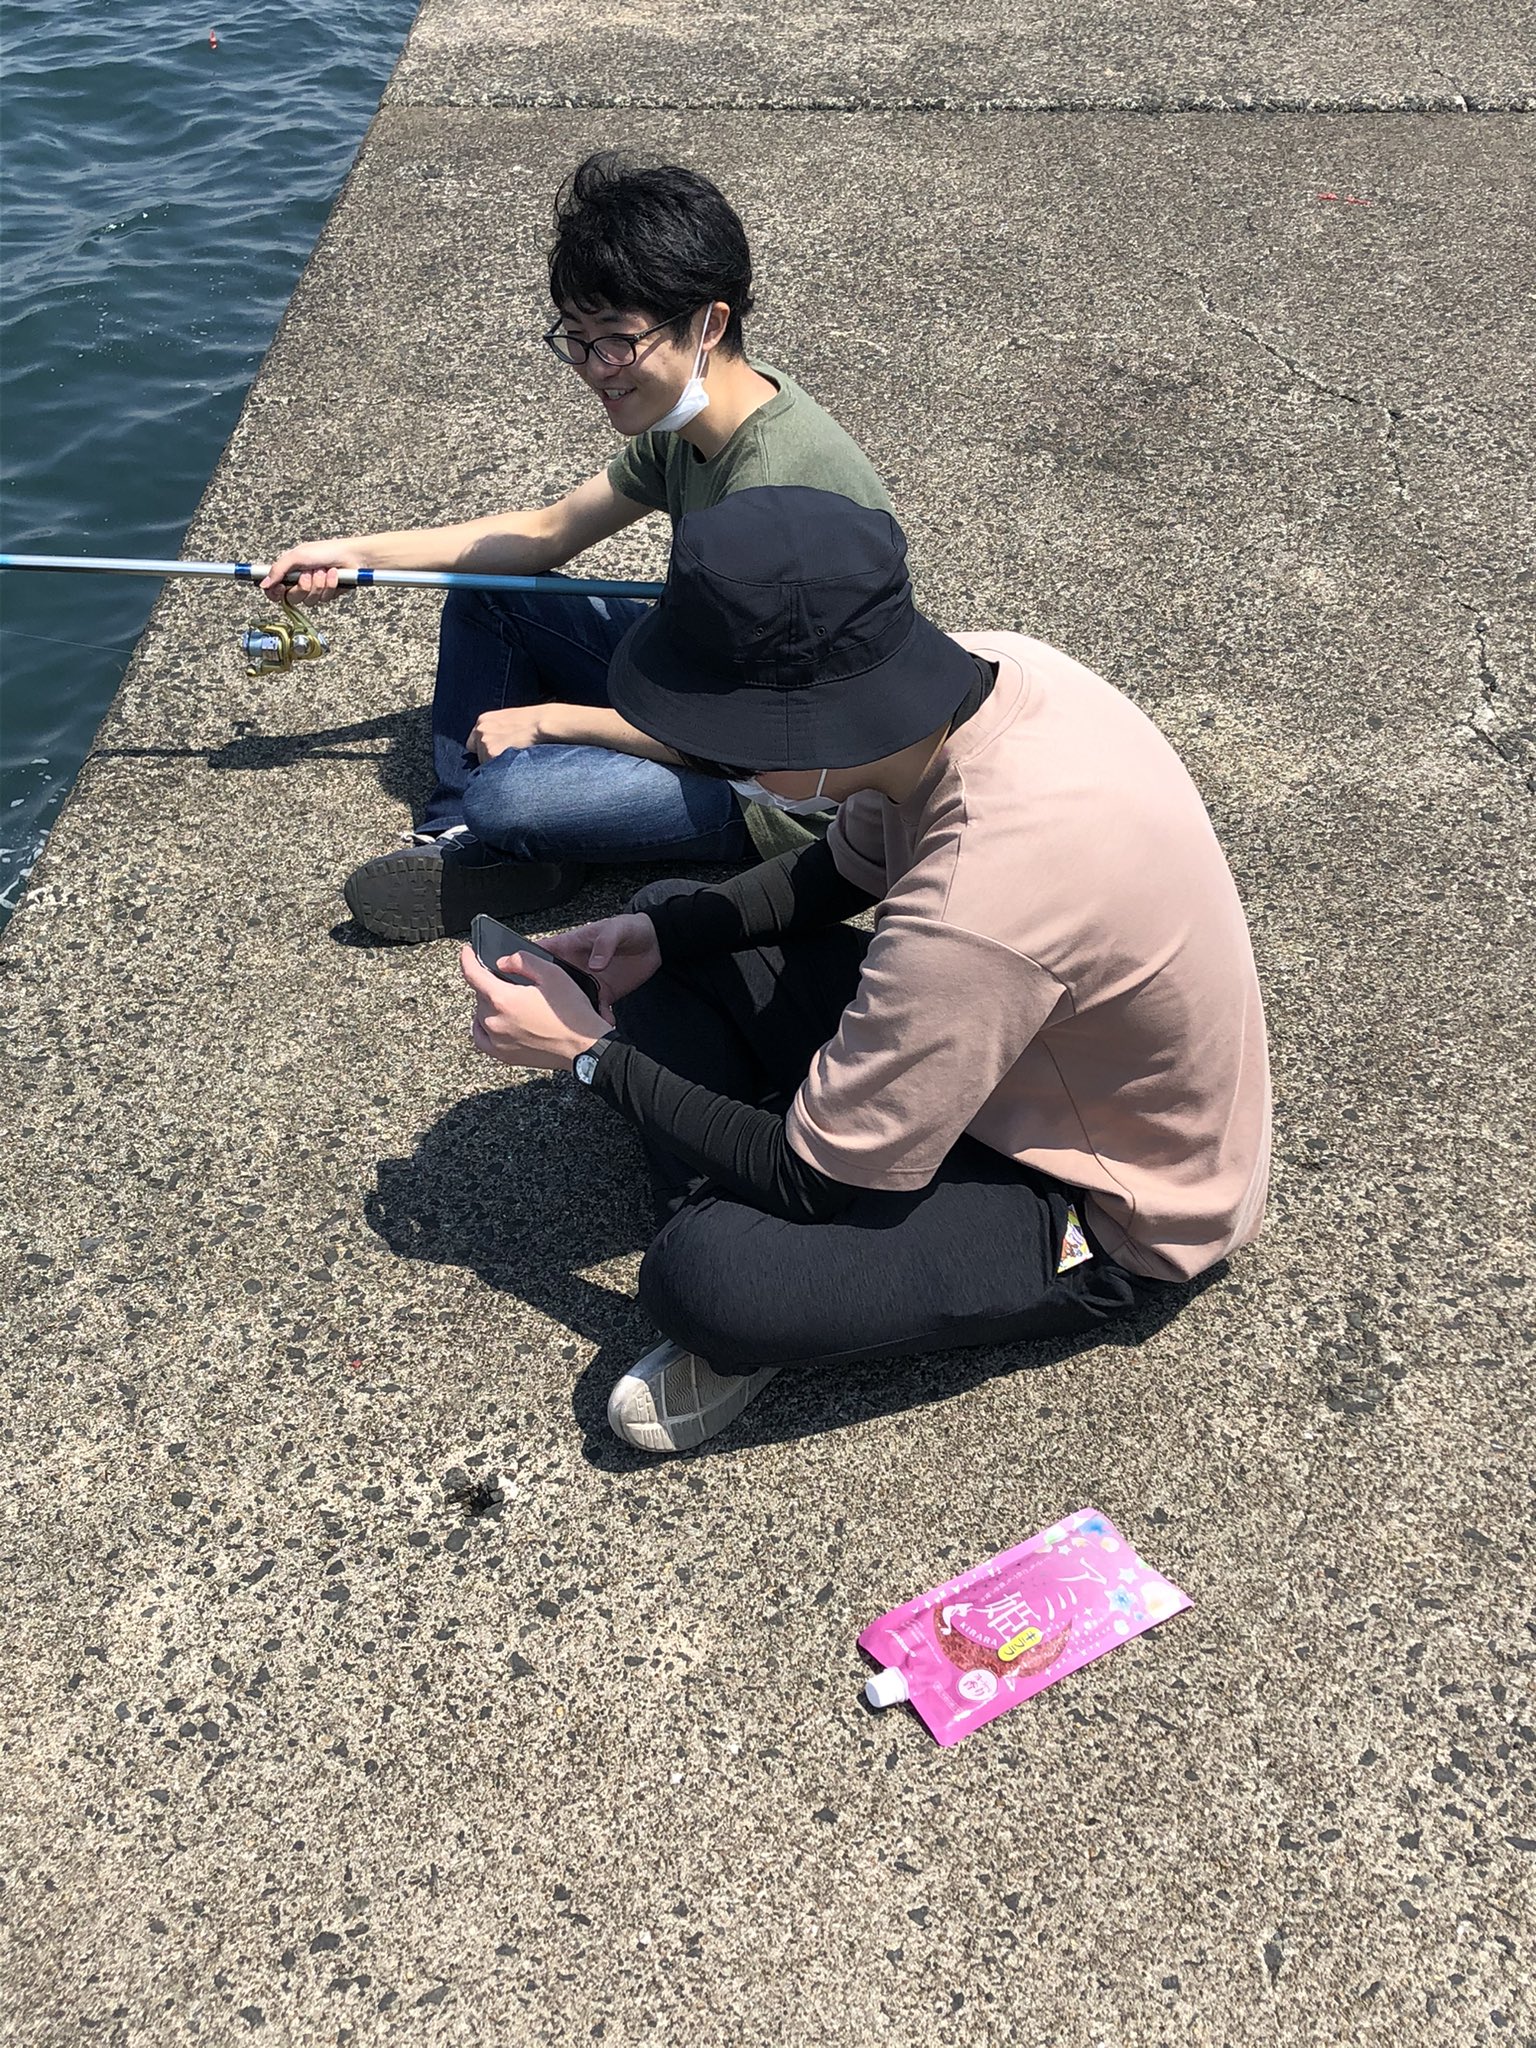 弘前大学ワンダーフォーゲル部 本日は鯵ヶ沢漁港にて海釣りに行ってきました 結果は見事にボウズでしたが また新たに3人が体験に来てくれて嬉しいかぎりです T Co Bycq3uoarw Twitter